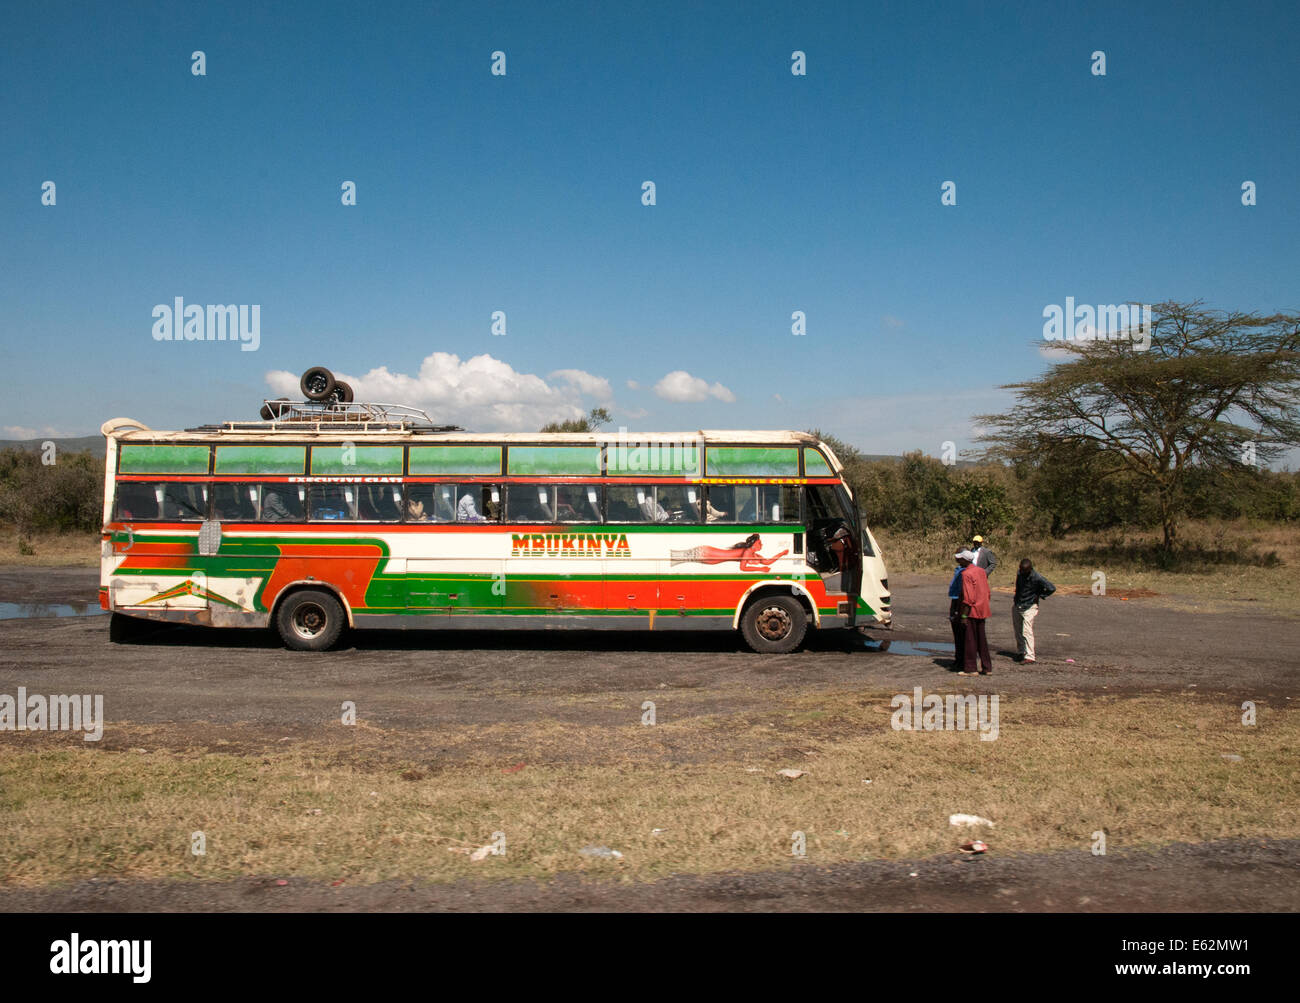 Ripartiti single decker bus a lunga distanza pullman con autista fuori preoccupante sul Naivasha Nakuru road Kenya Africa Foto Stock